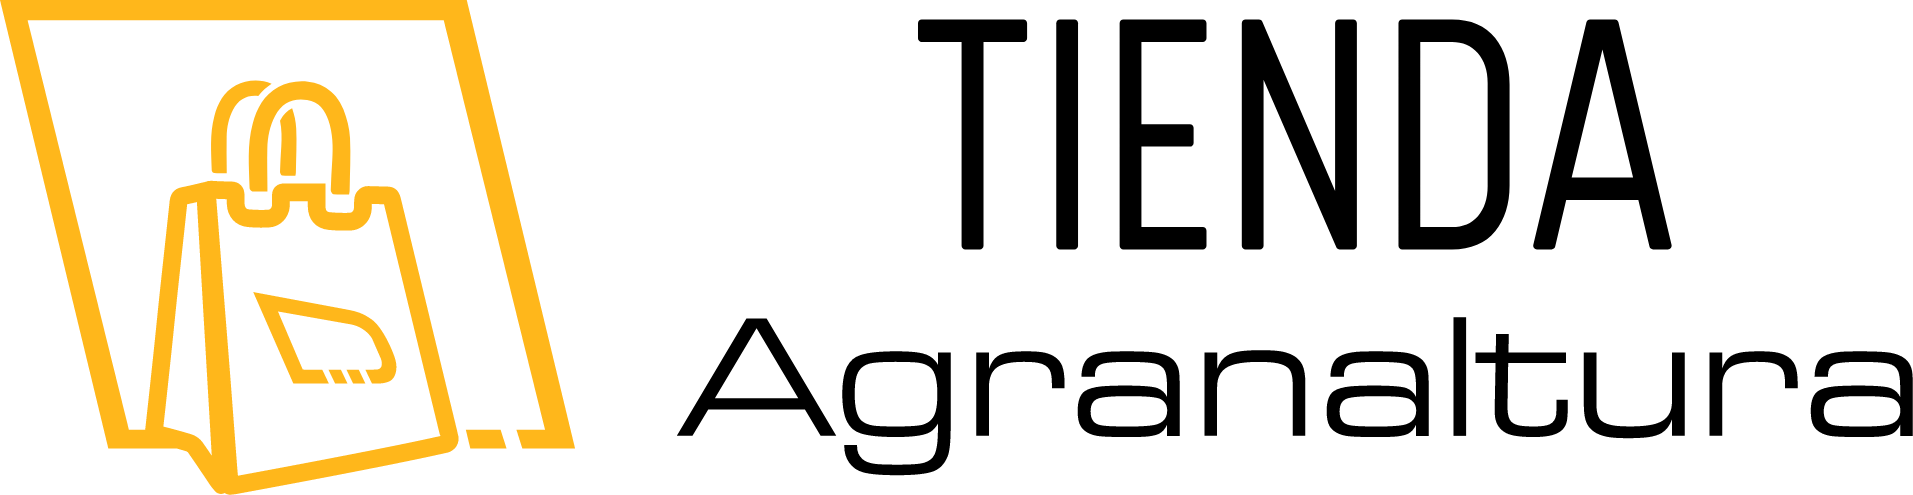 Logotipo Tienda Agranaltura